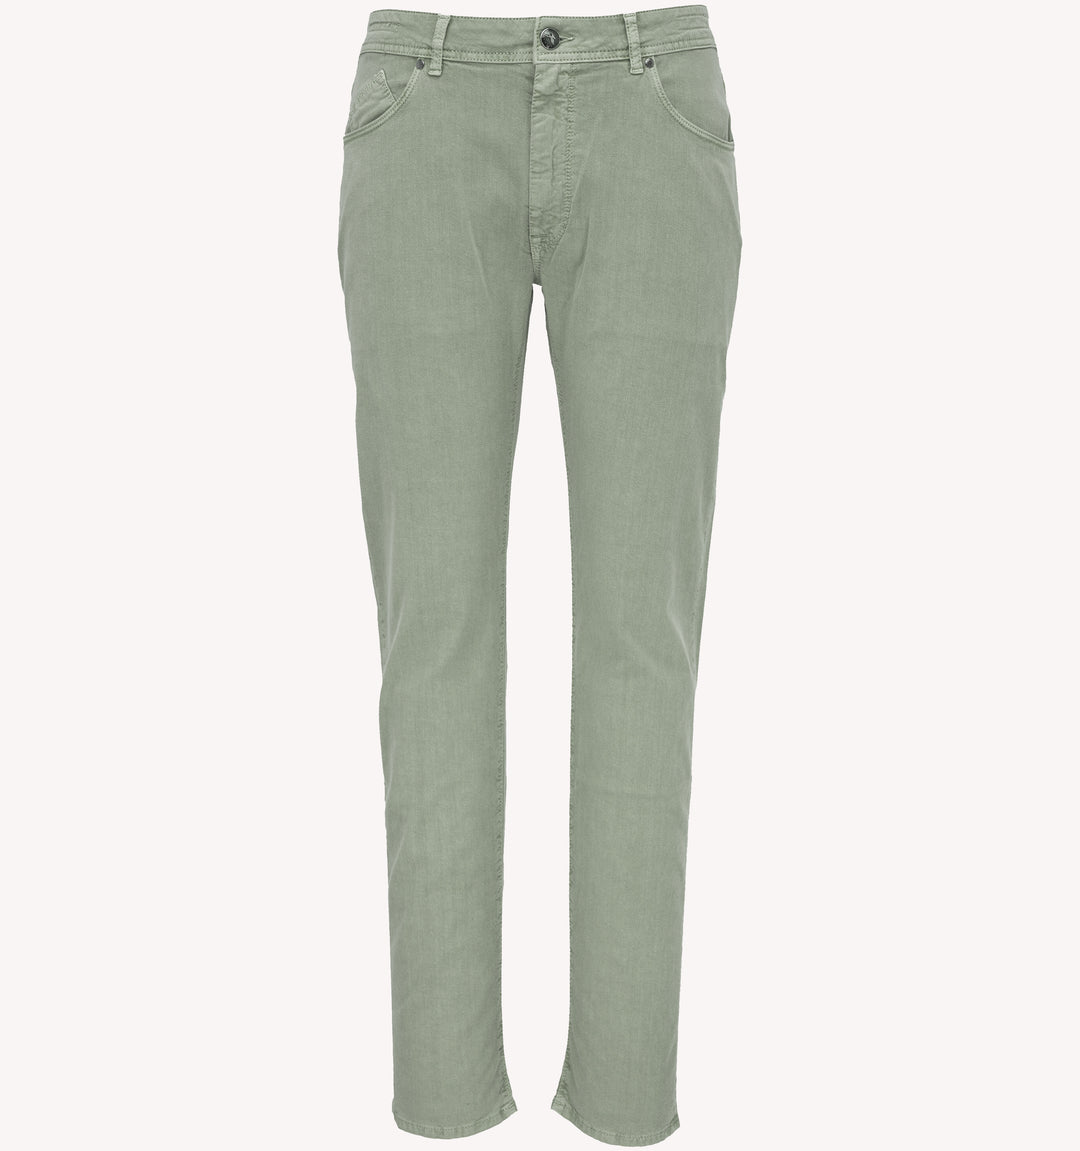 Barmas Dean Jeans in Green